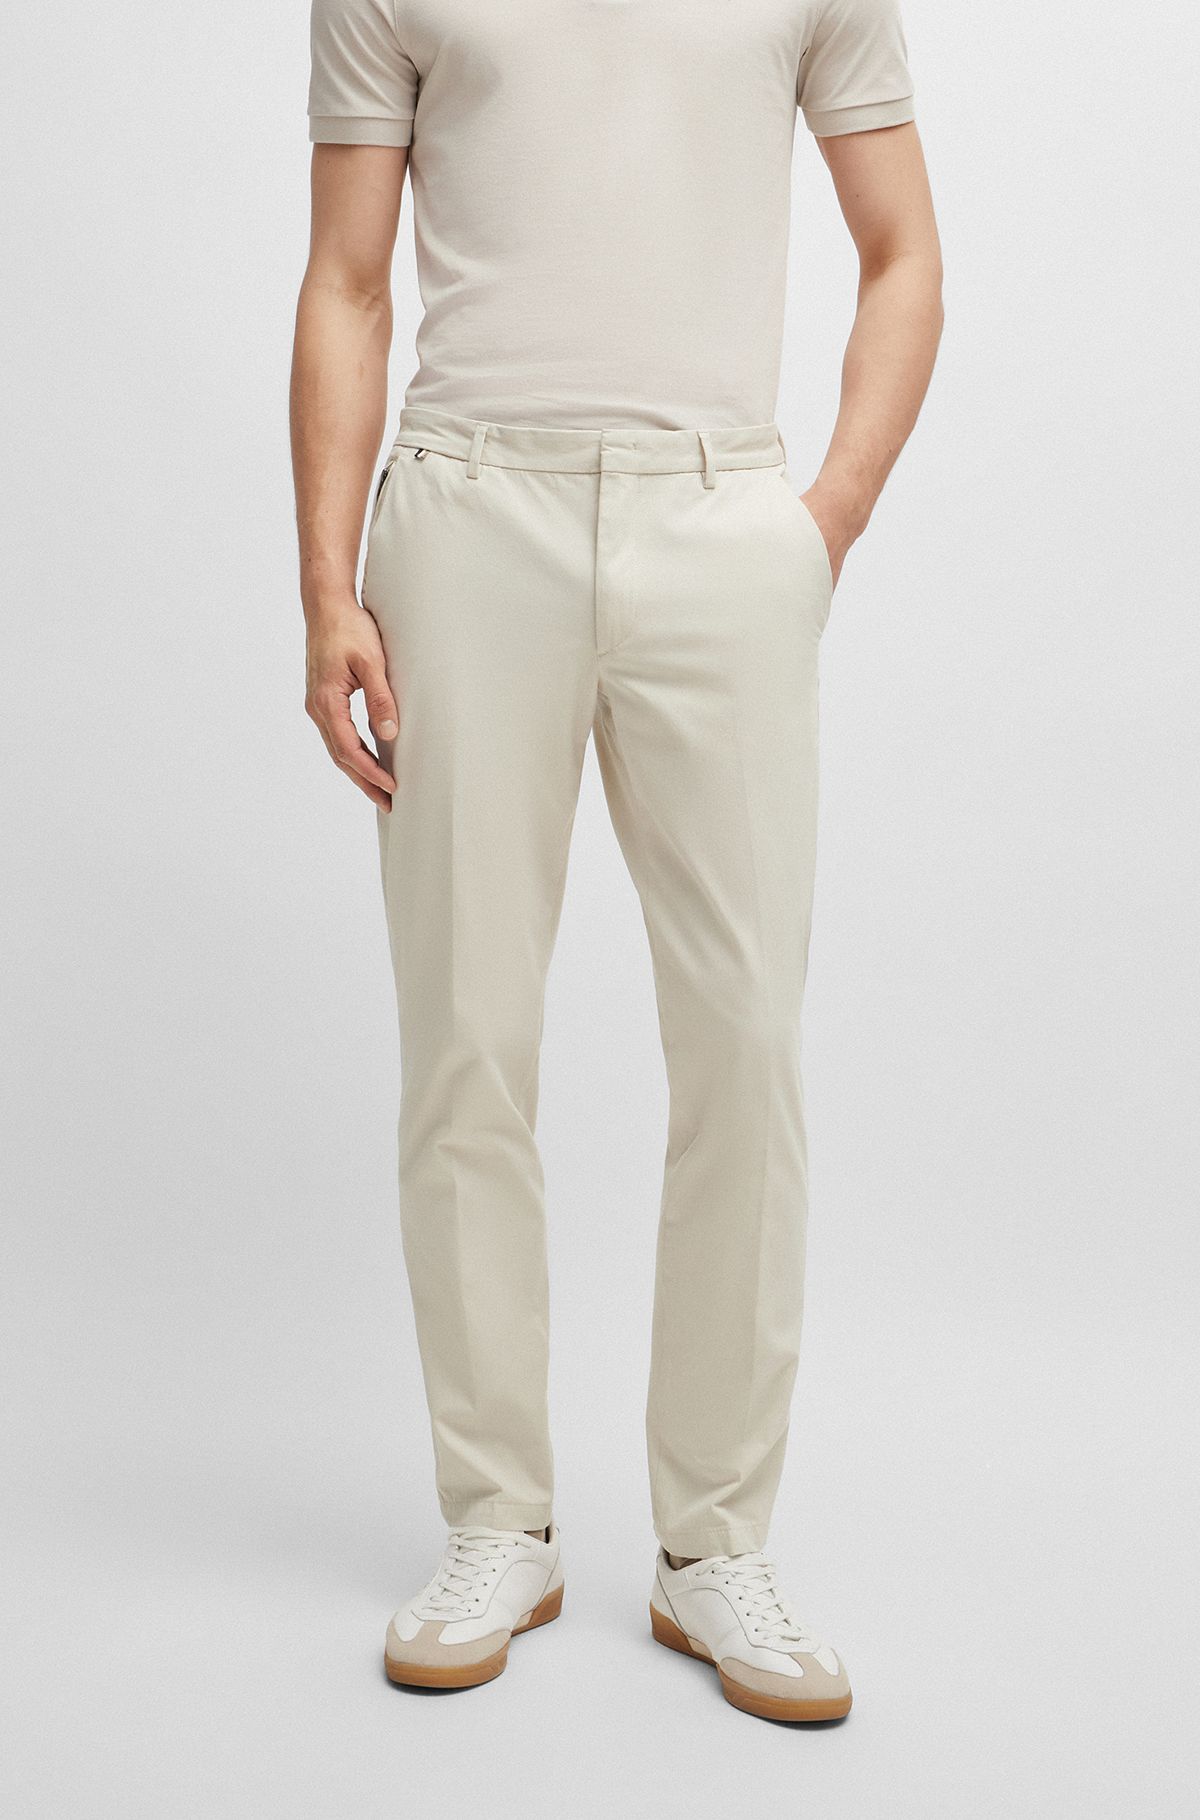 Brown White Trouser, Pantalones, Pants